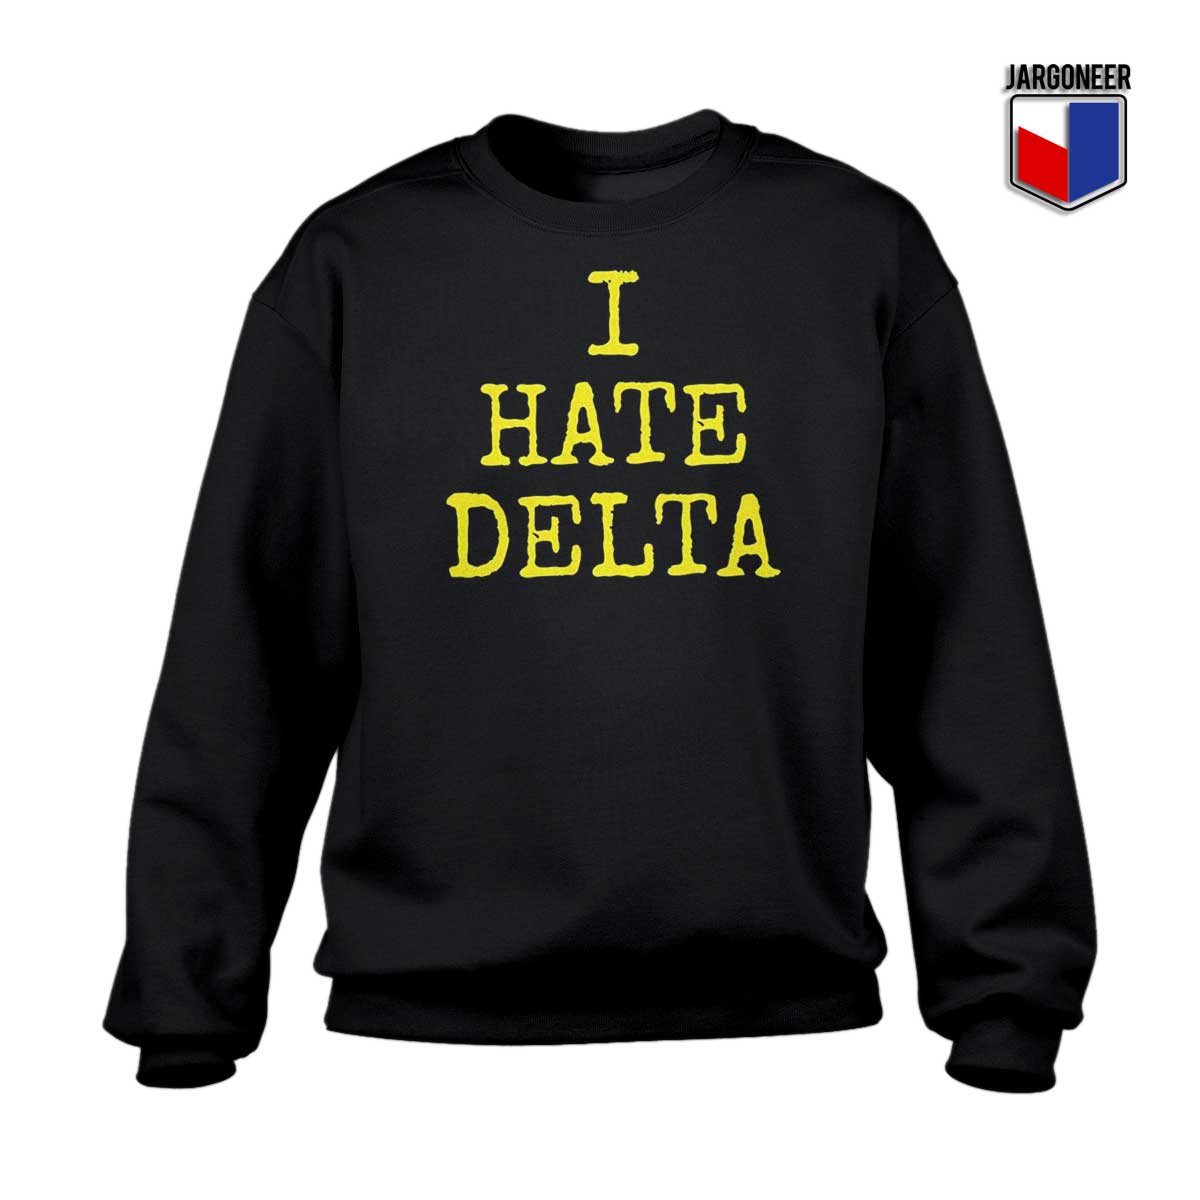 I hate Delta Sweatshirt - Shop Unique Graphic Cool Shirt Designs